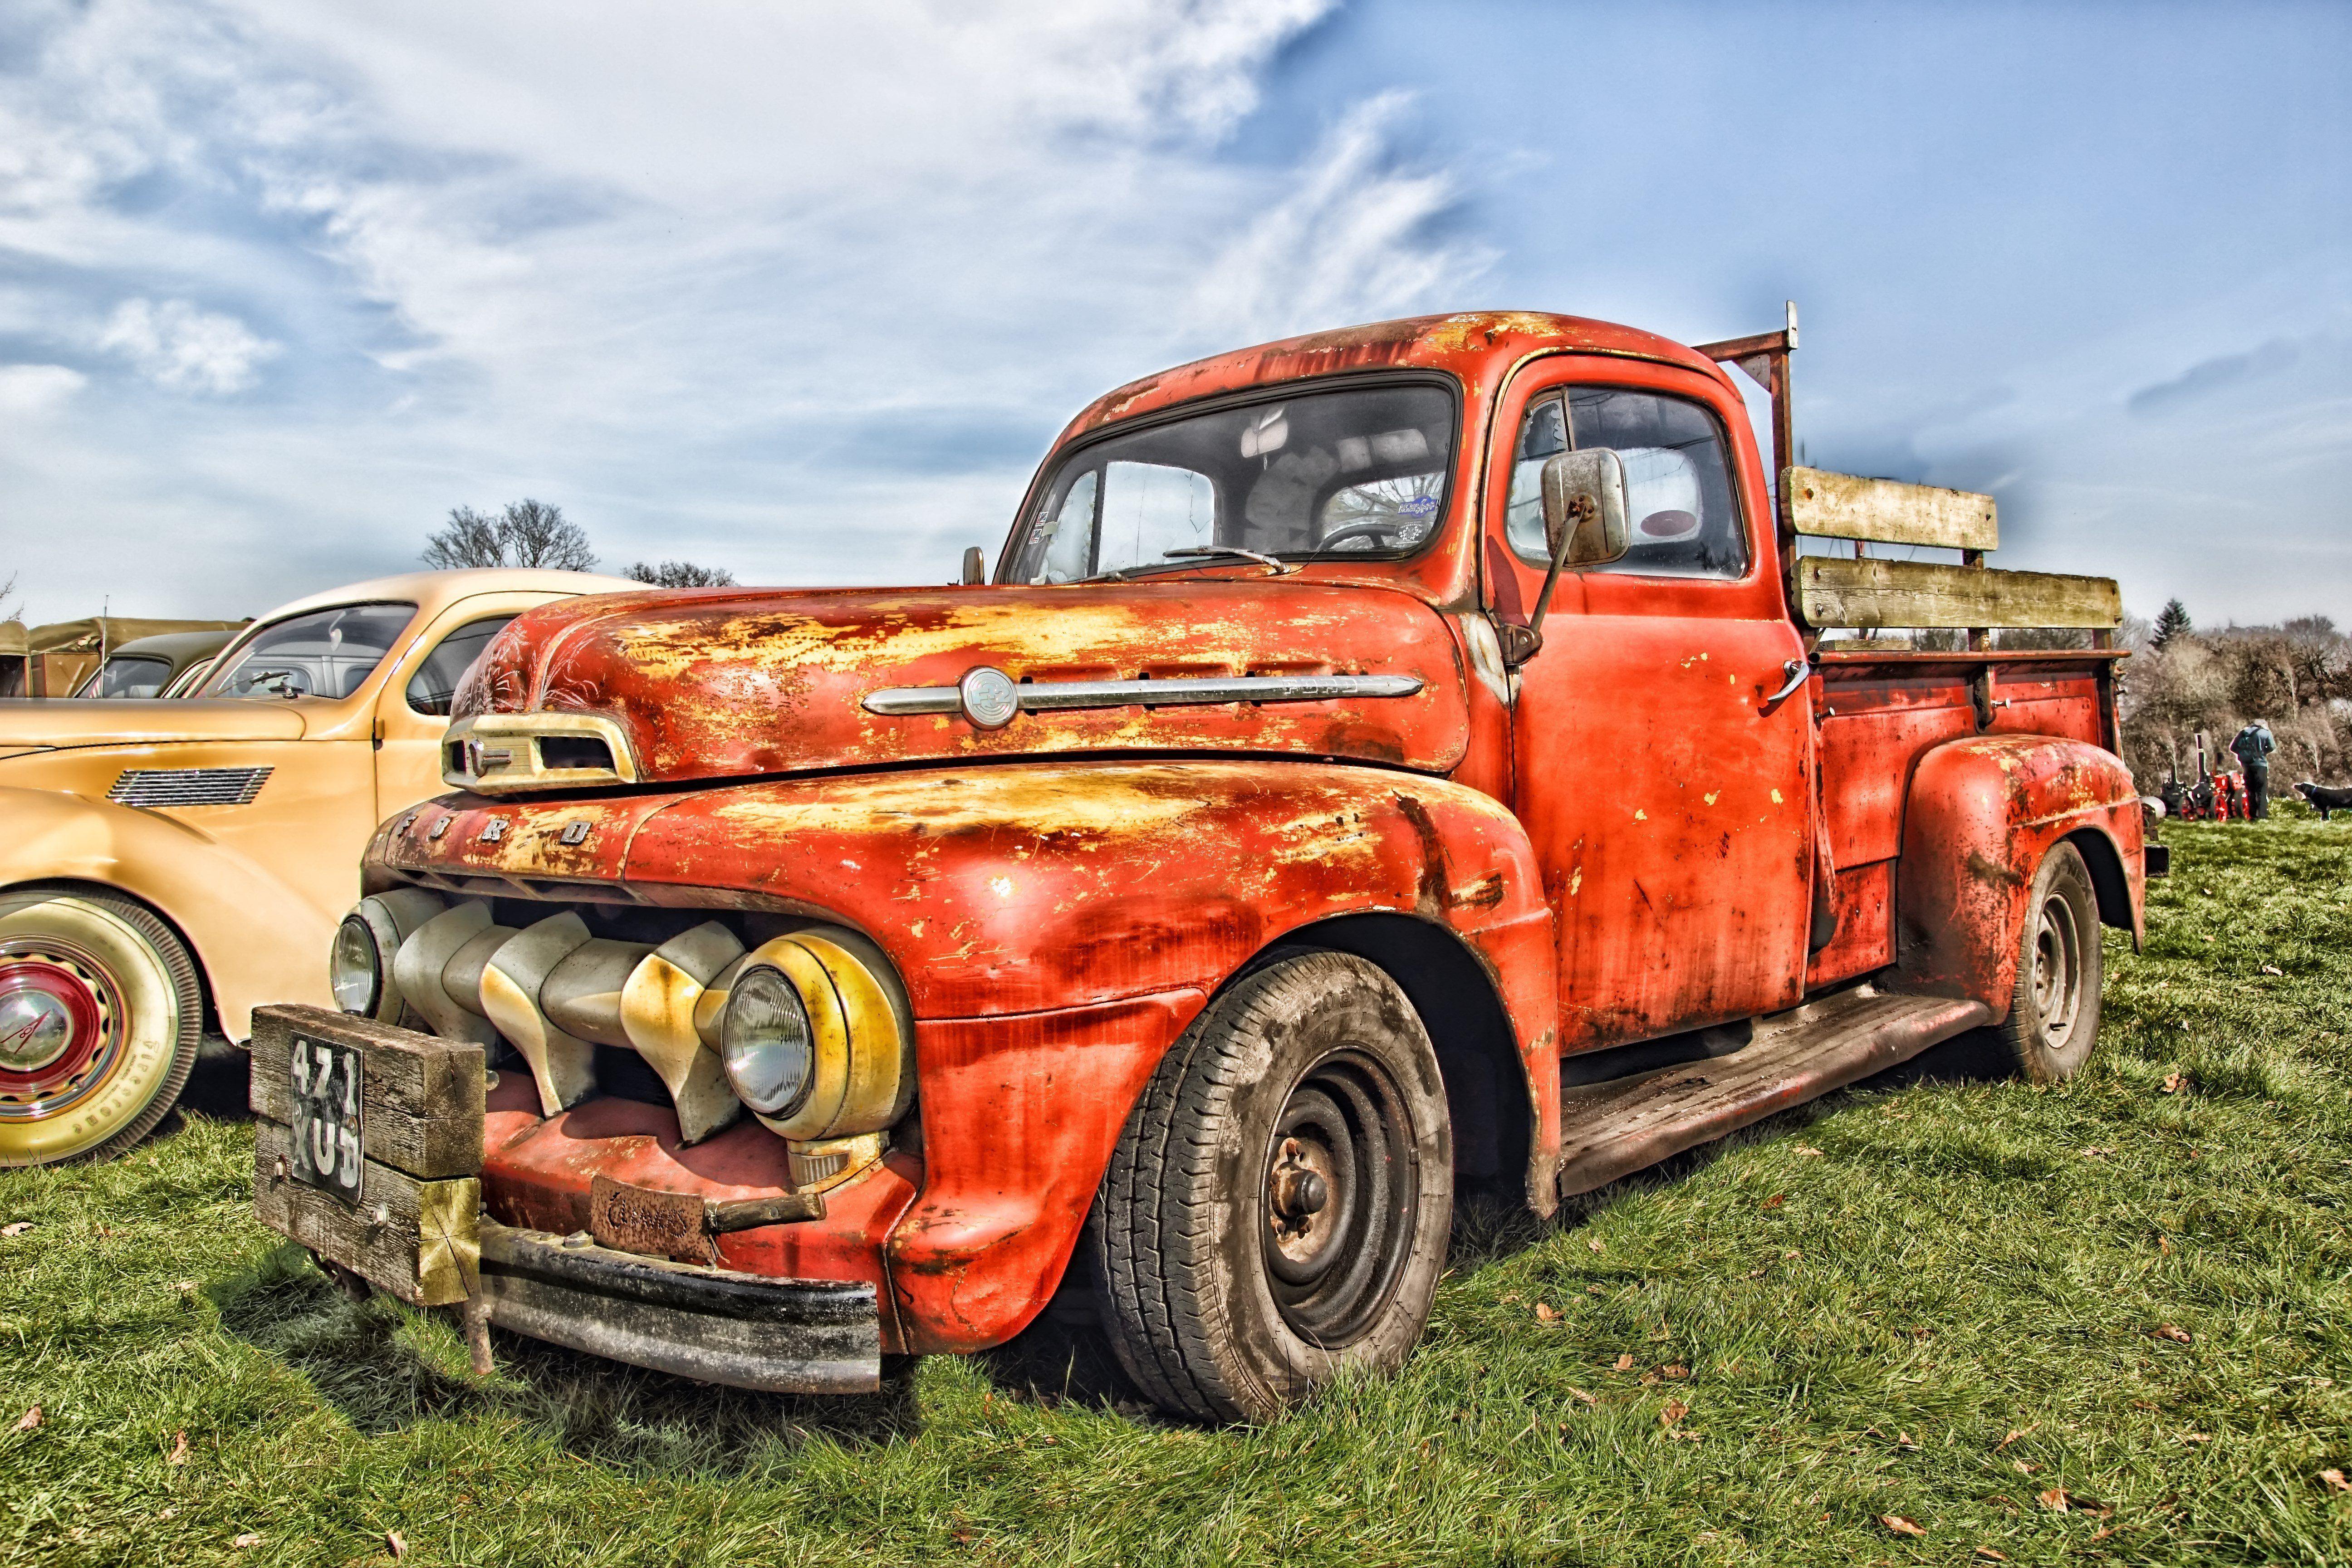 Rusty Old Truck wallpaperx3456. Old trucks